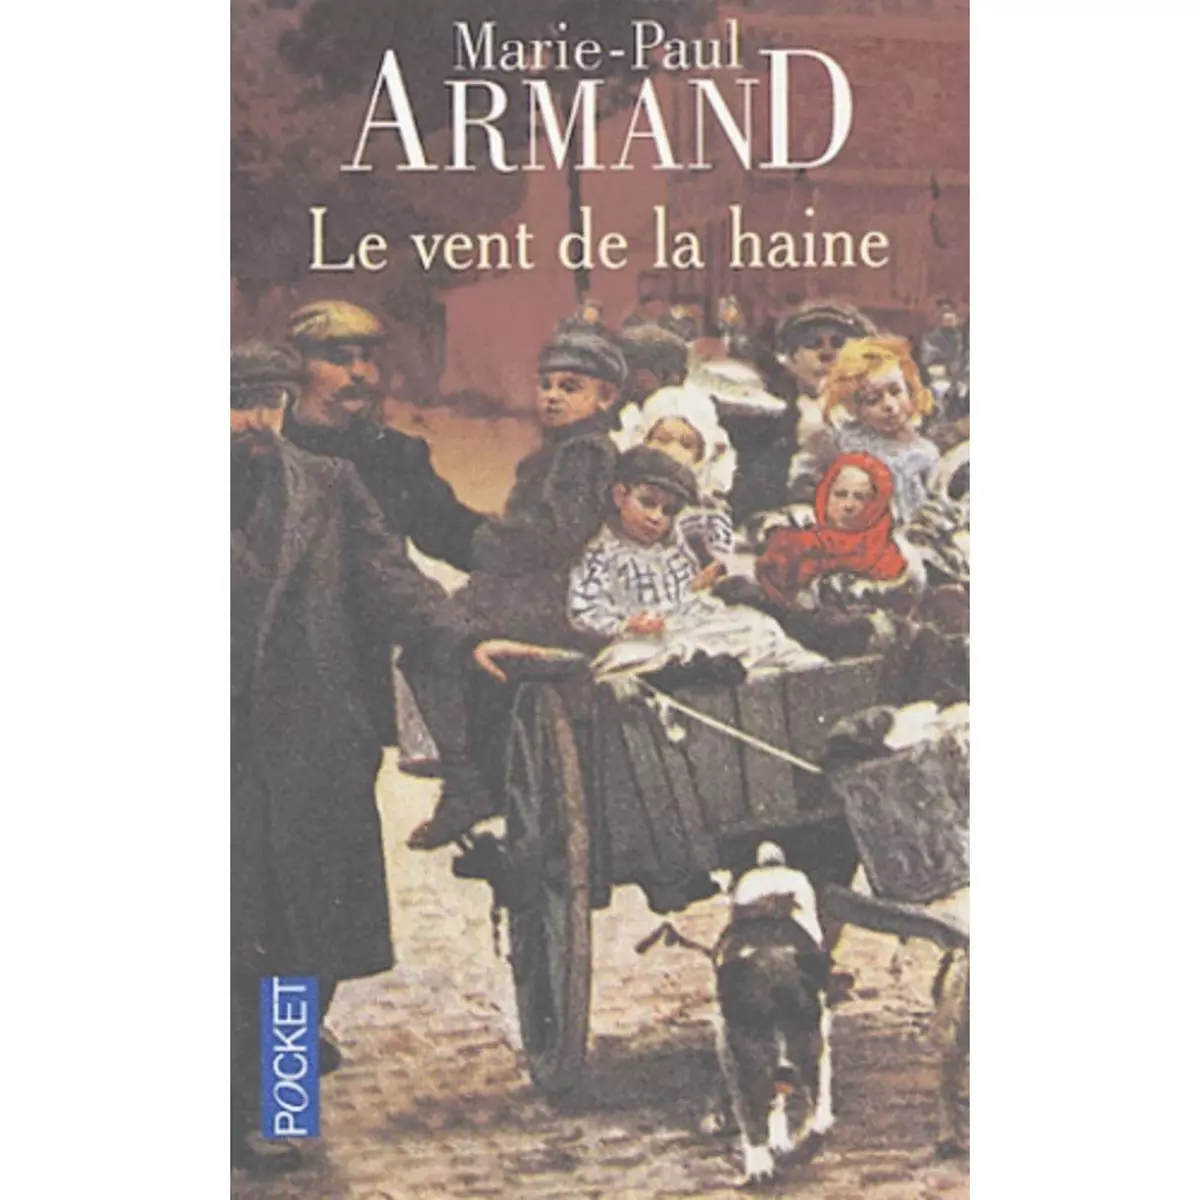  LE VENT DE LA HAINE, Armand Marie-Paul